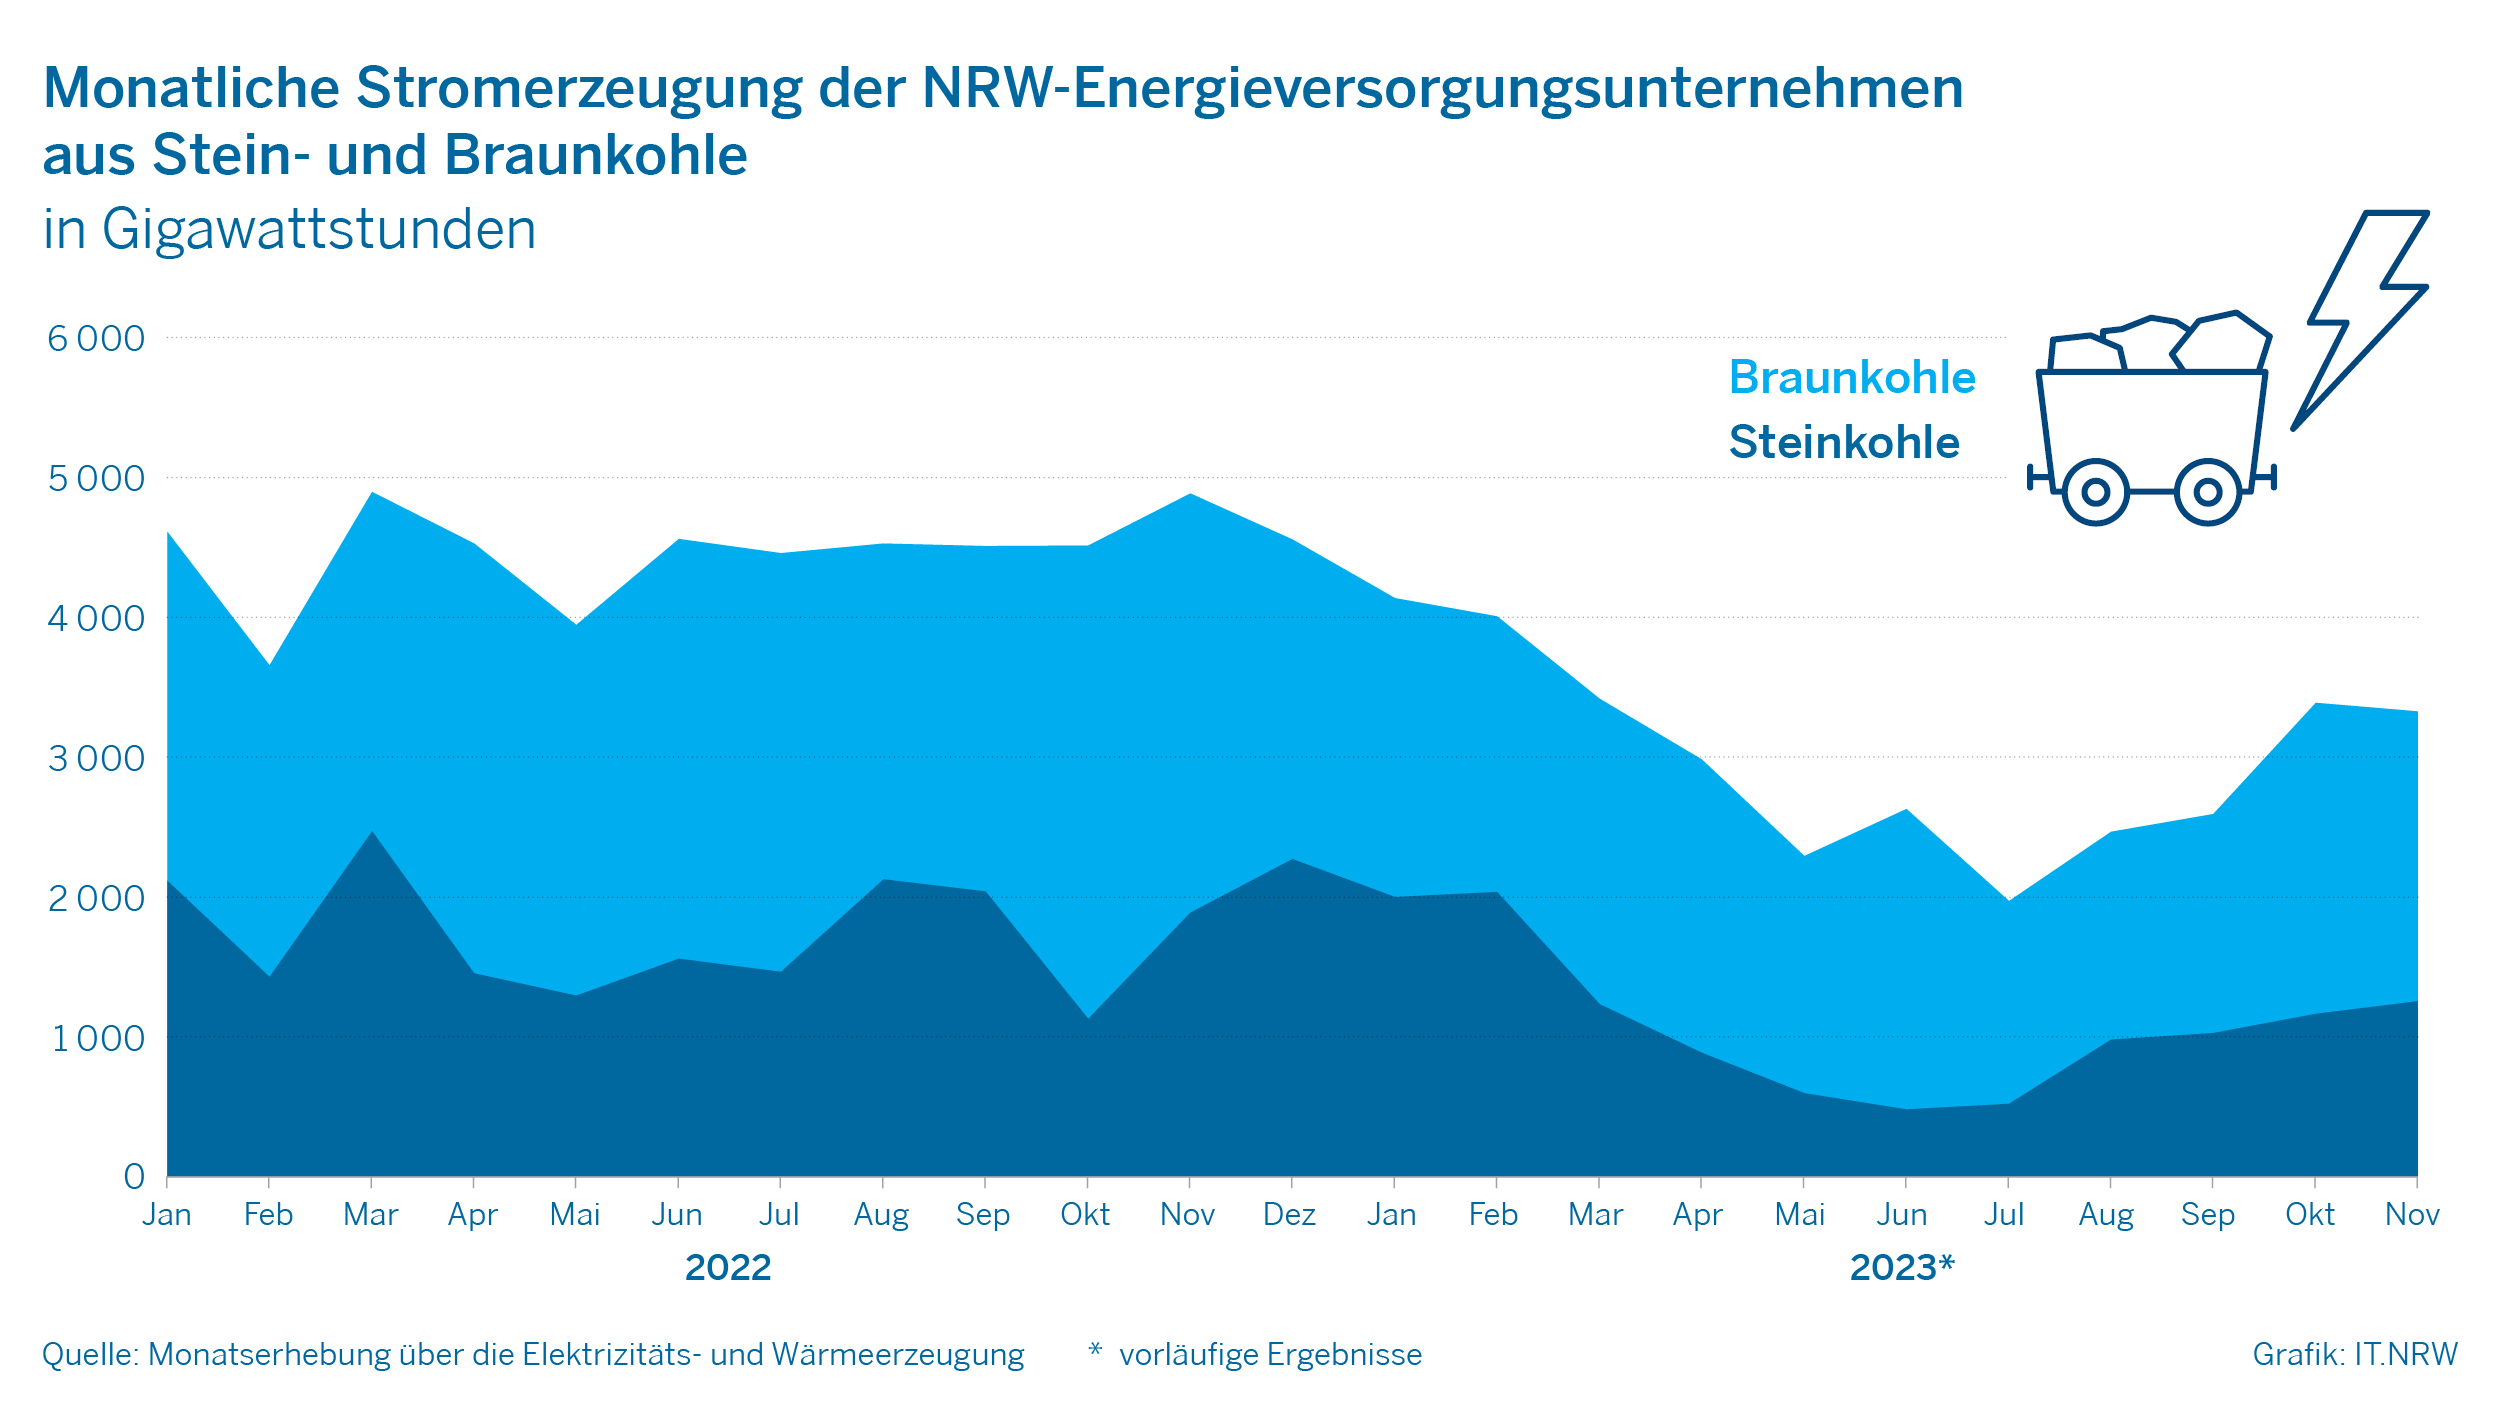 Monatliche Stromerzeugung der NRW-Energieversorgungsunternehmen aus Stein- und Braunkohle